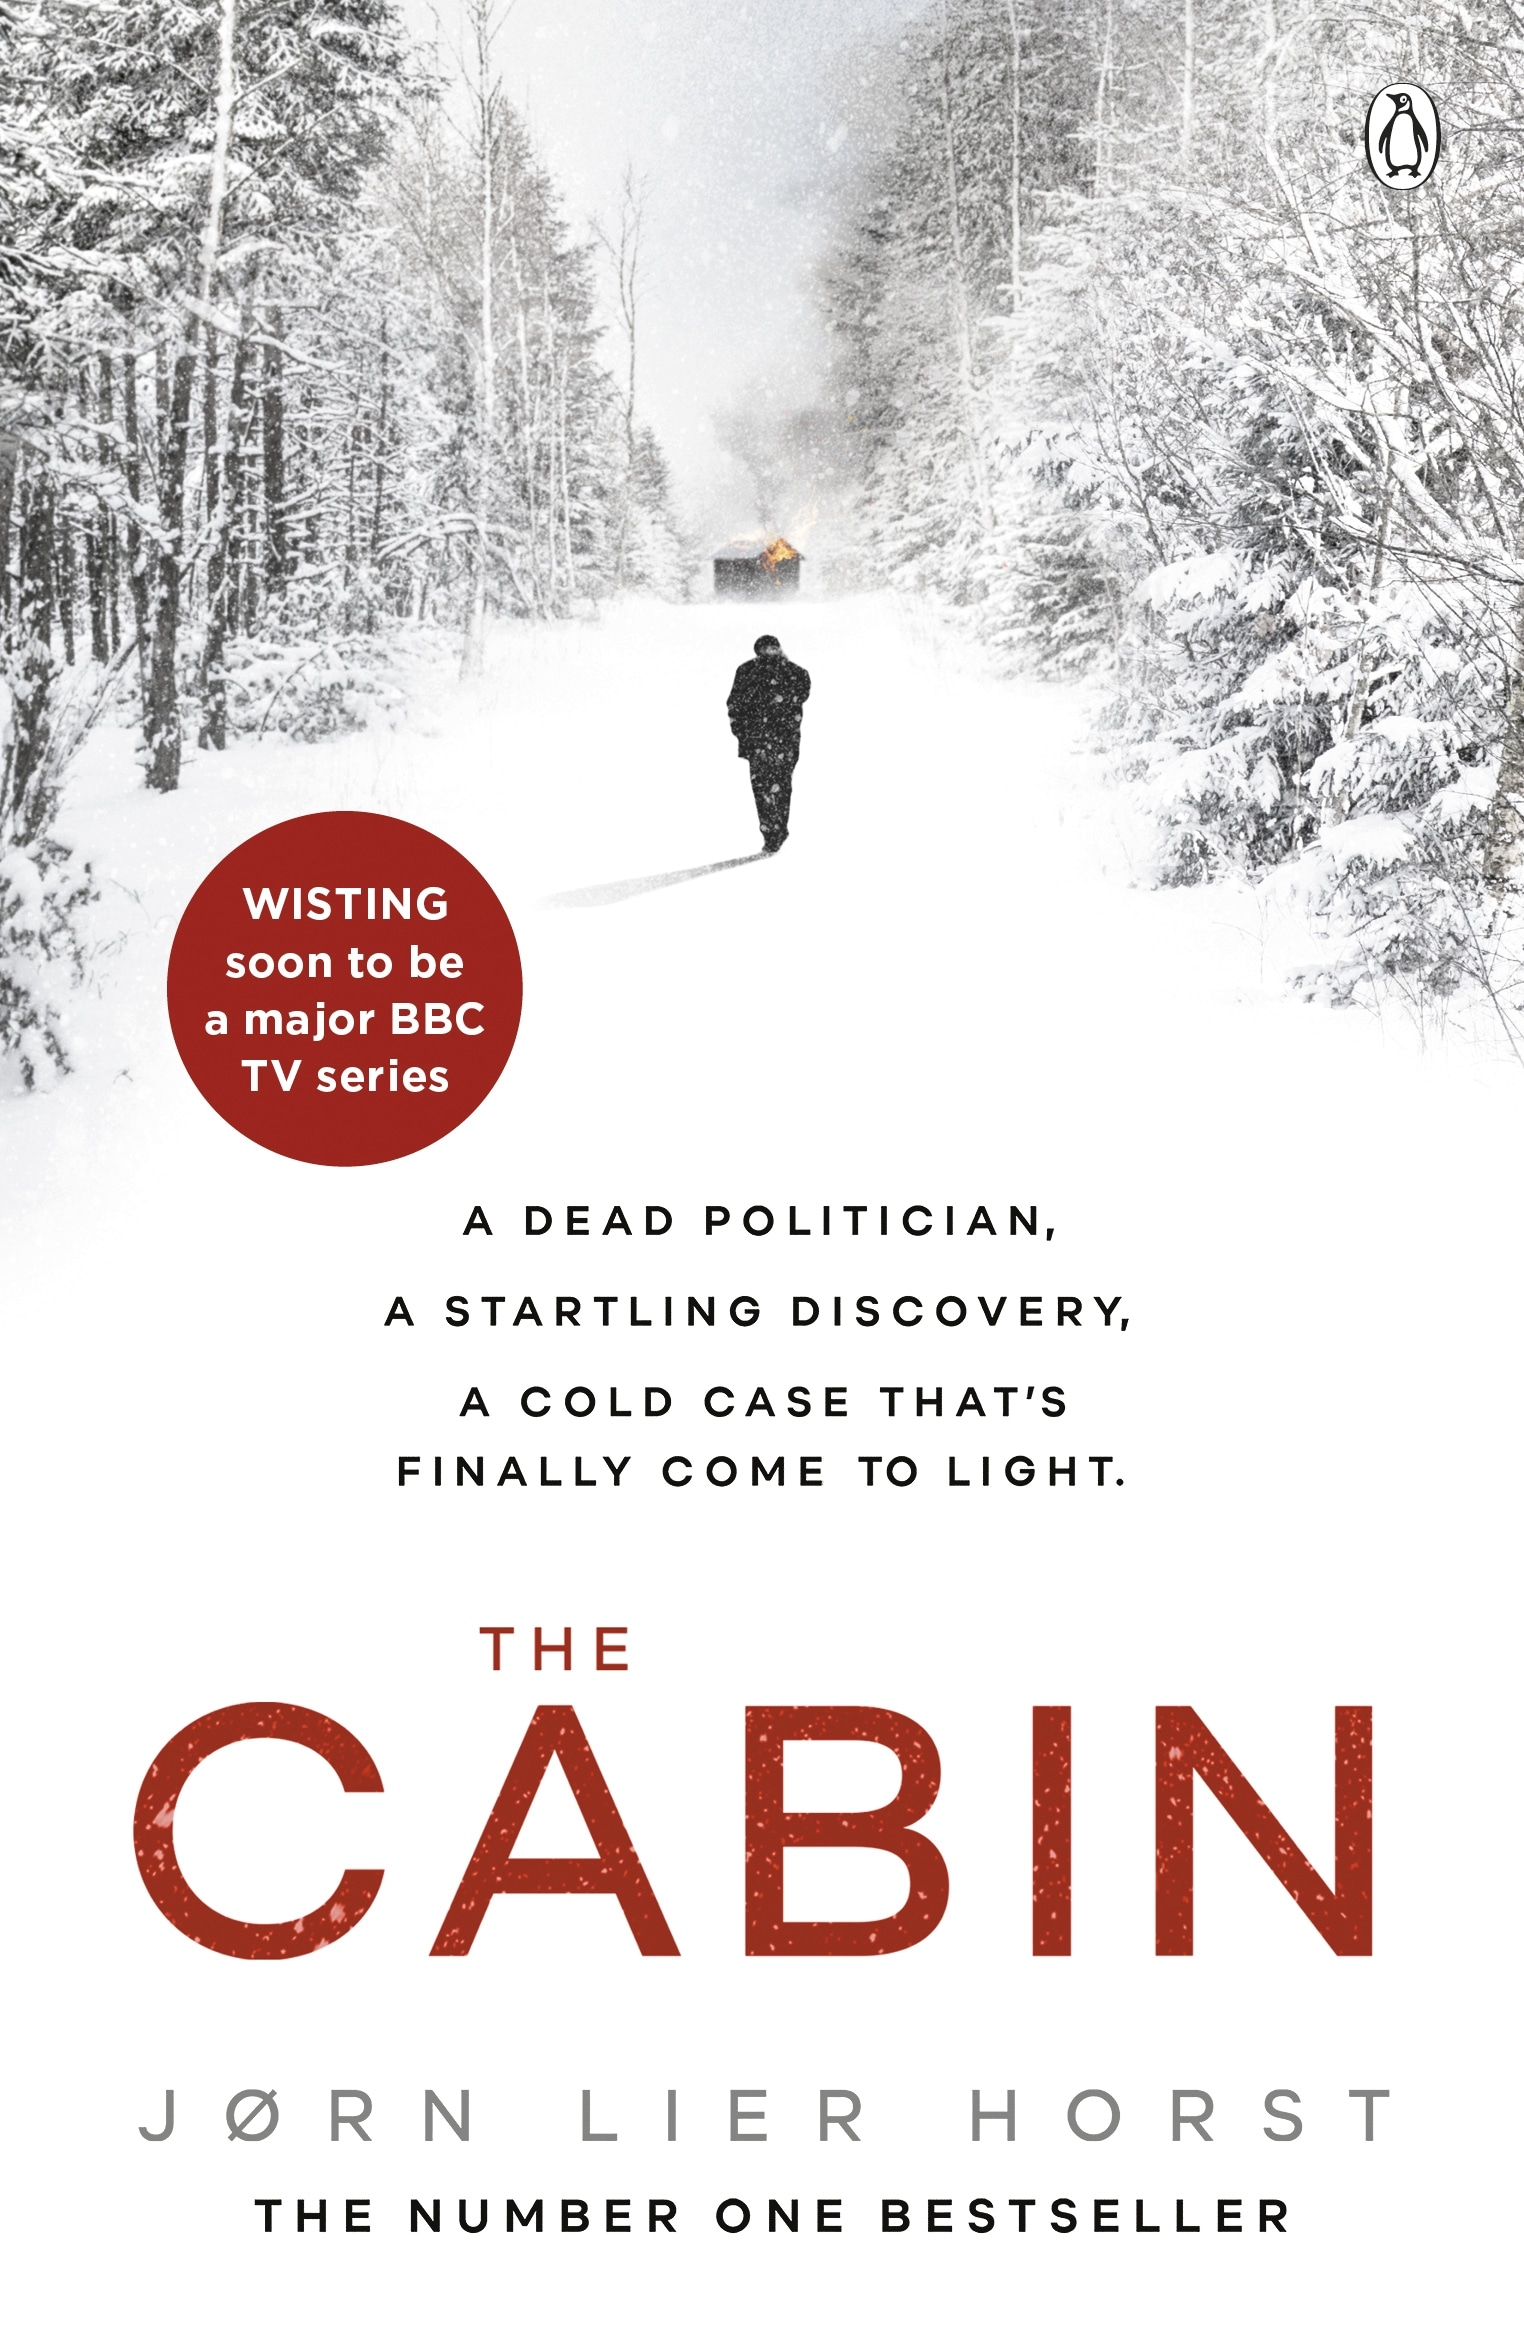 Book “The Cabin” by Jørn Lier Horst — December 12, 2019